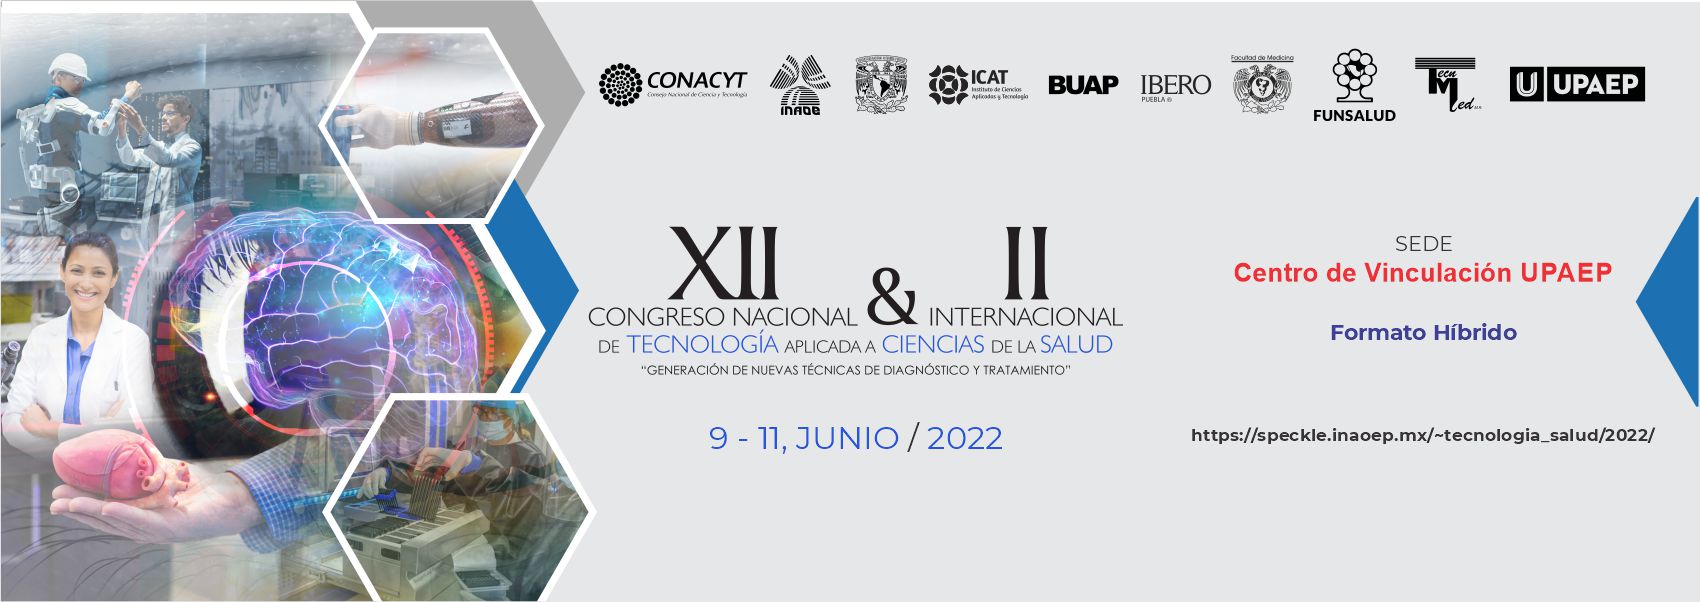 XII Congreso Nacional de Tecnología Aplicada a Ciencias de la Salud 2022